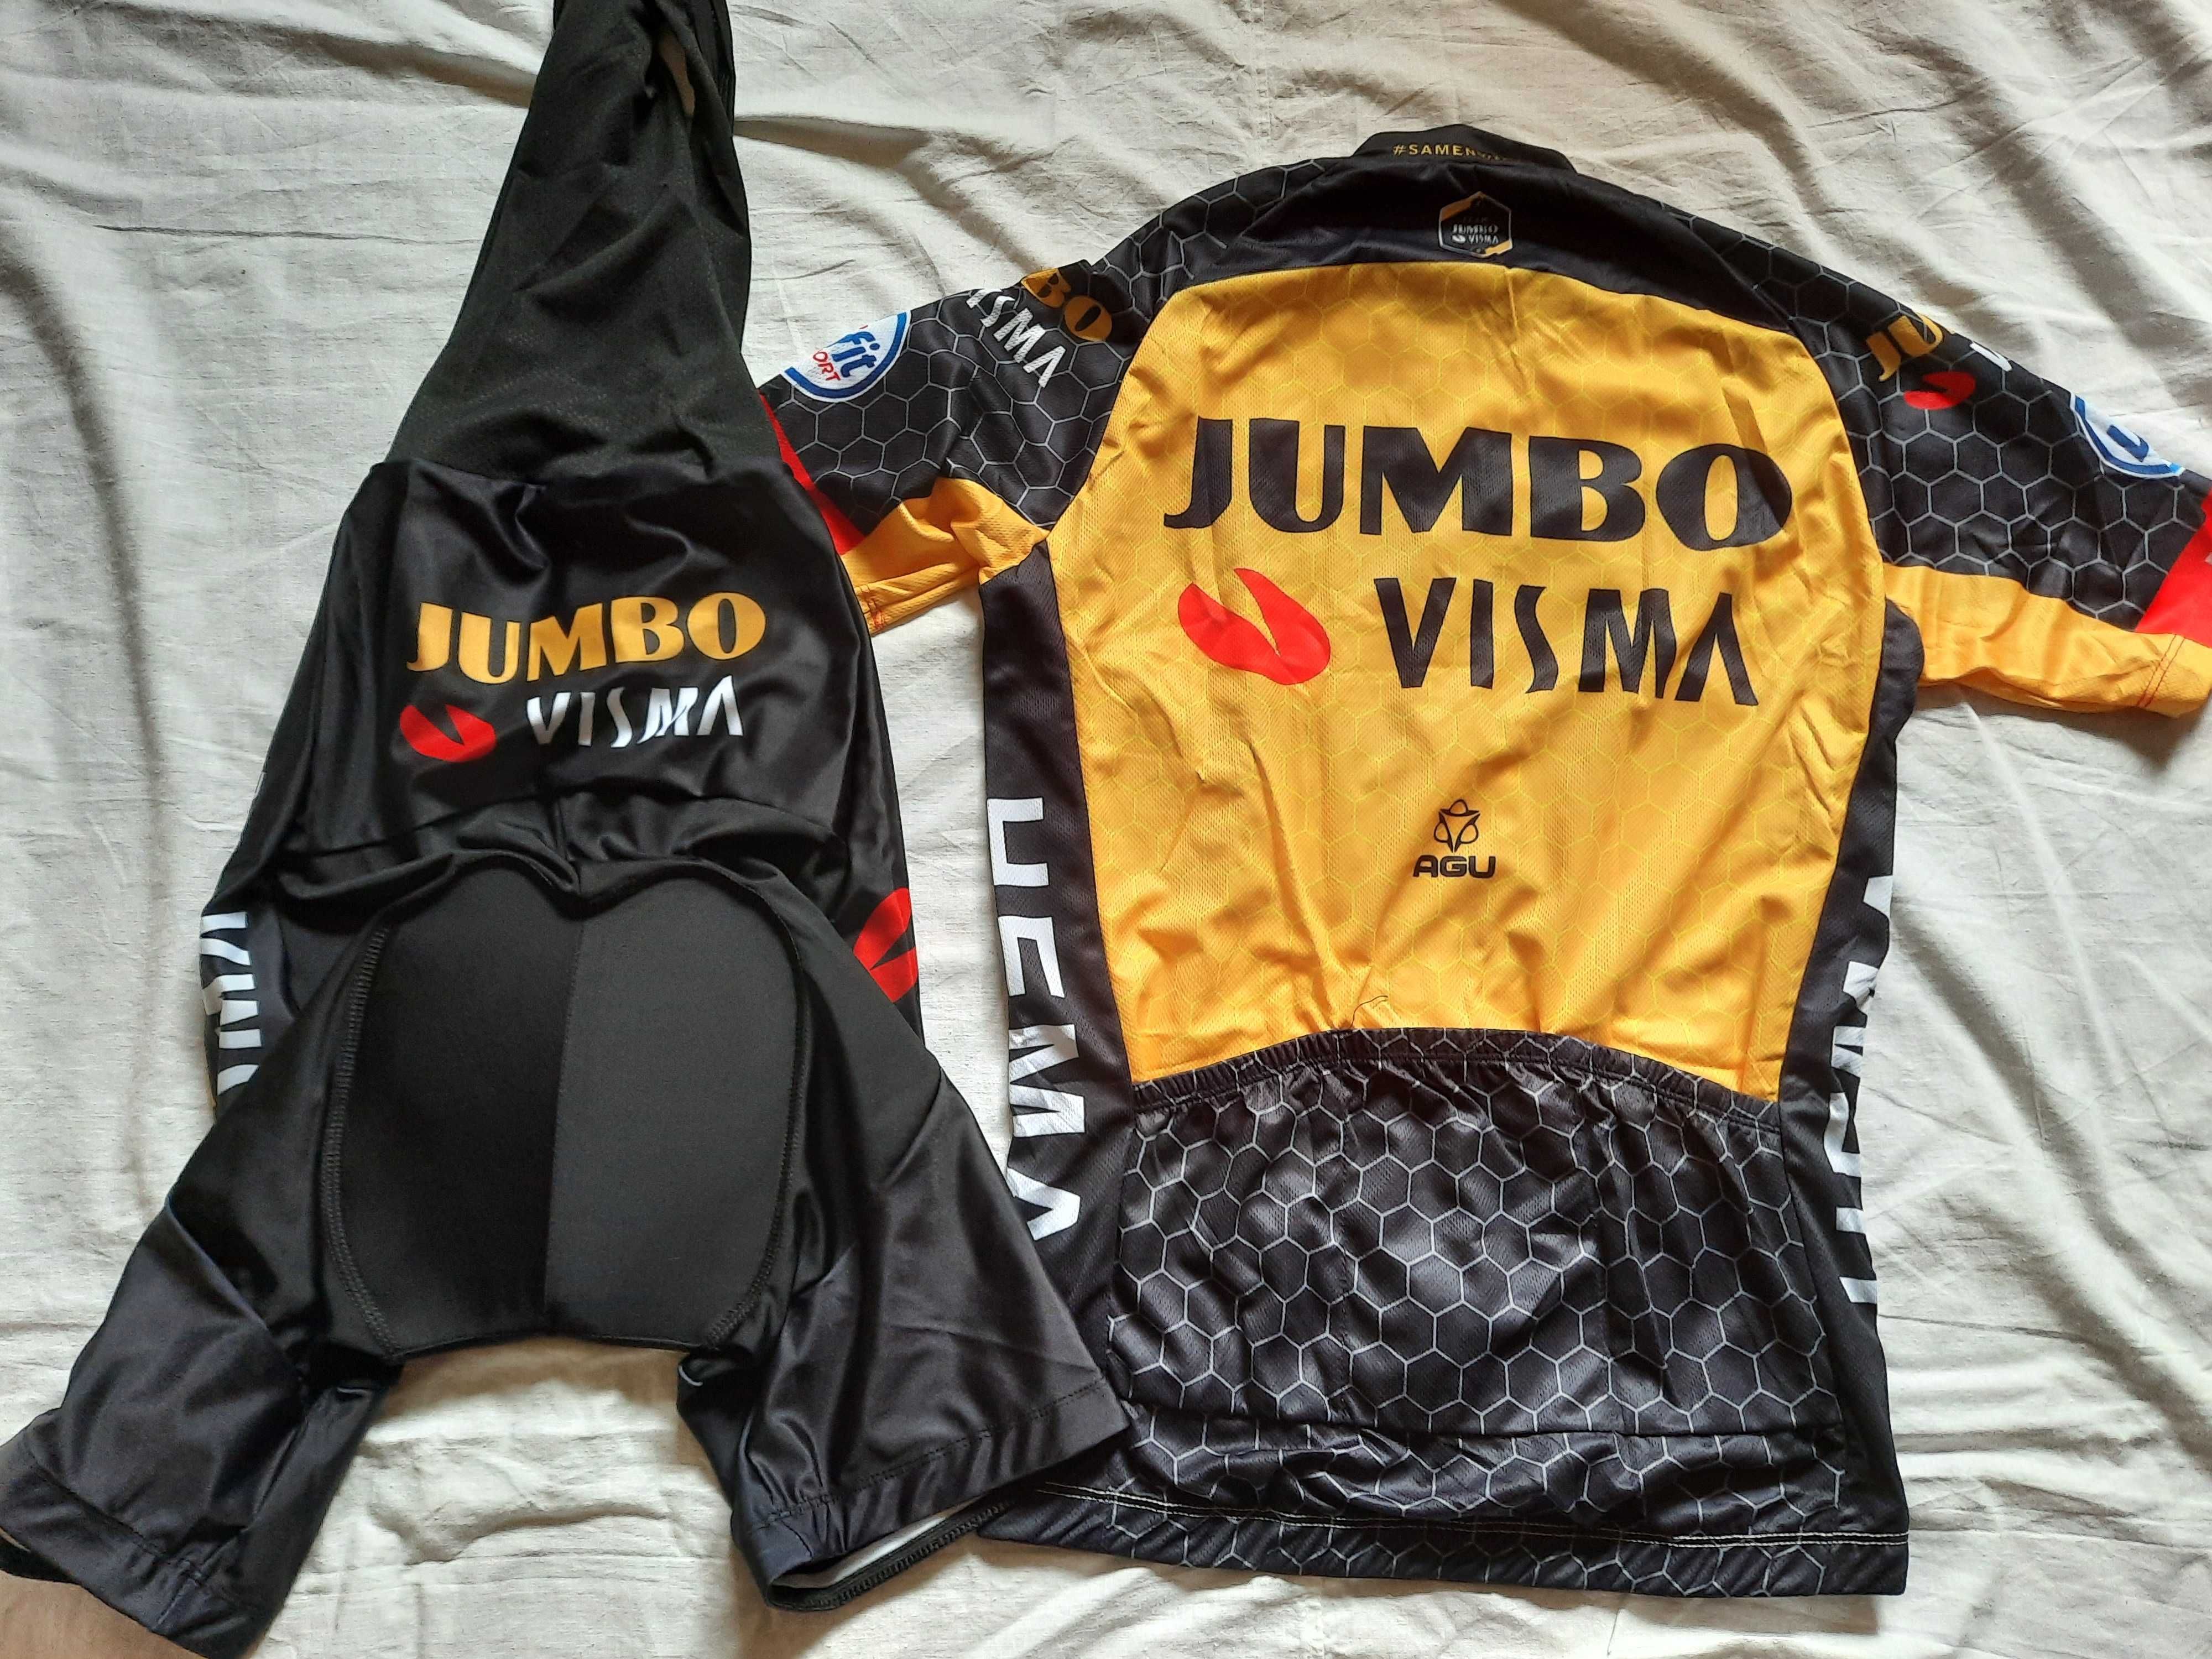 Echipament ciclism Jumbo Visma 2021 set pantaloni tricou